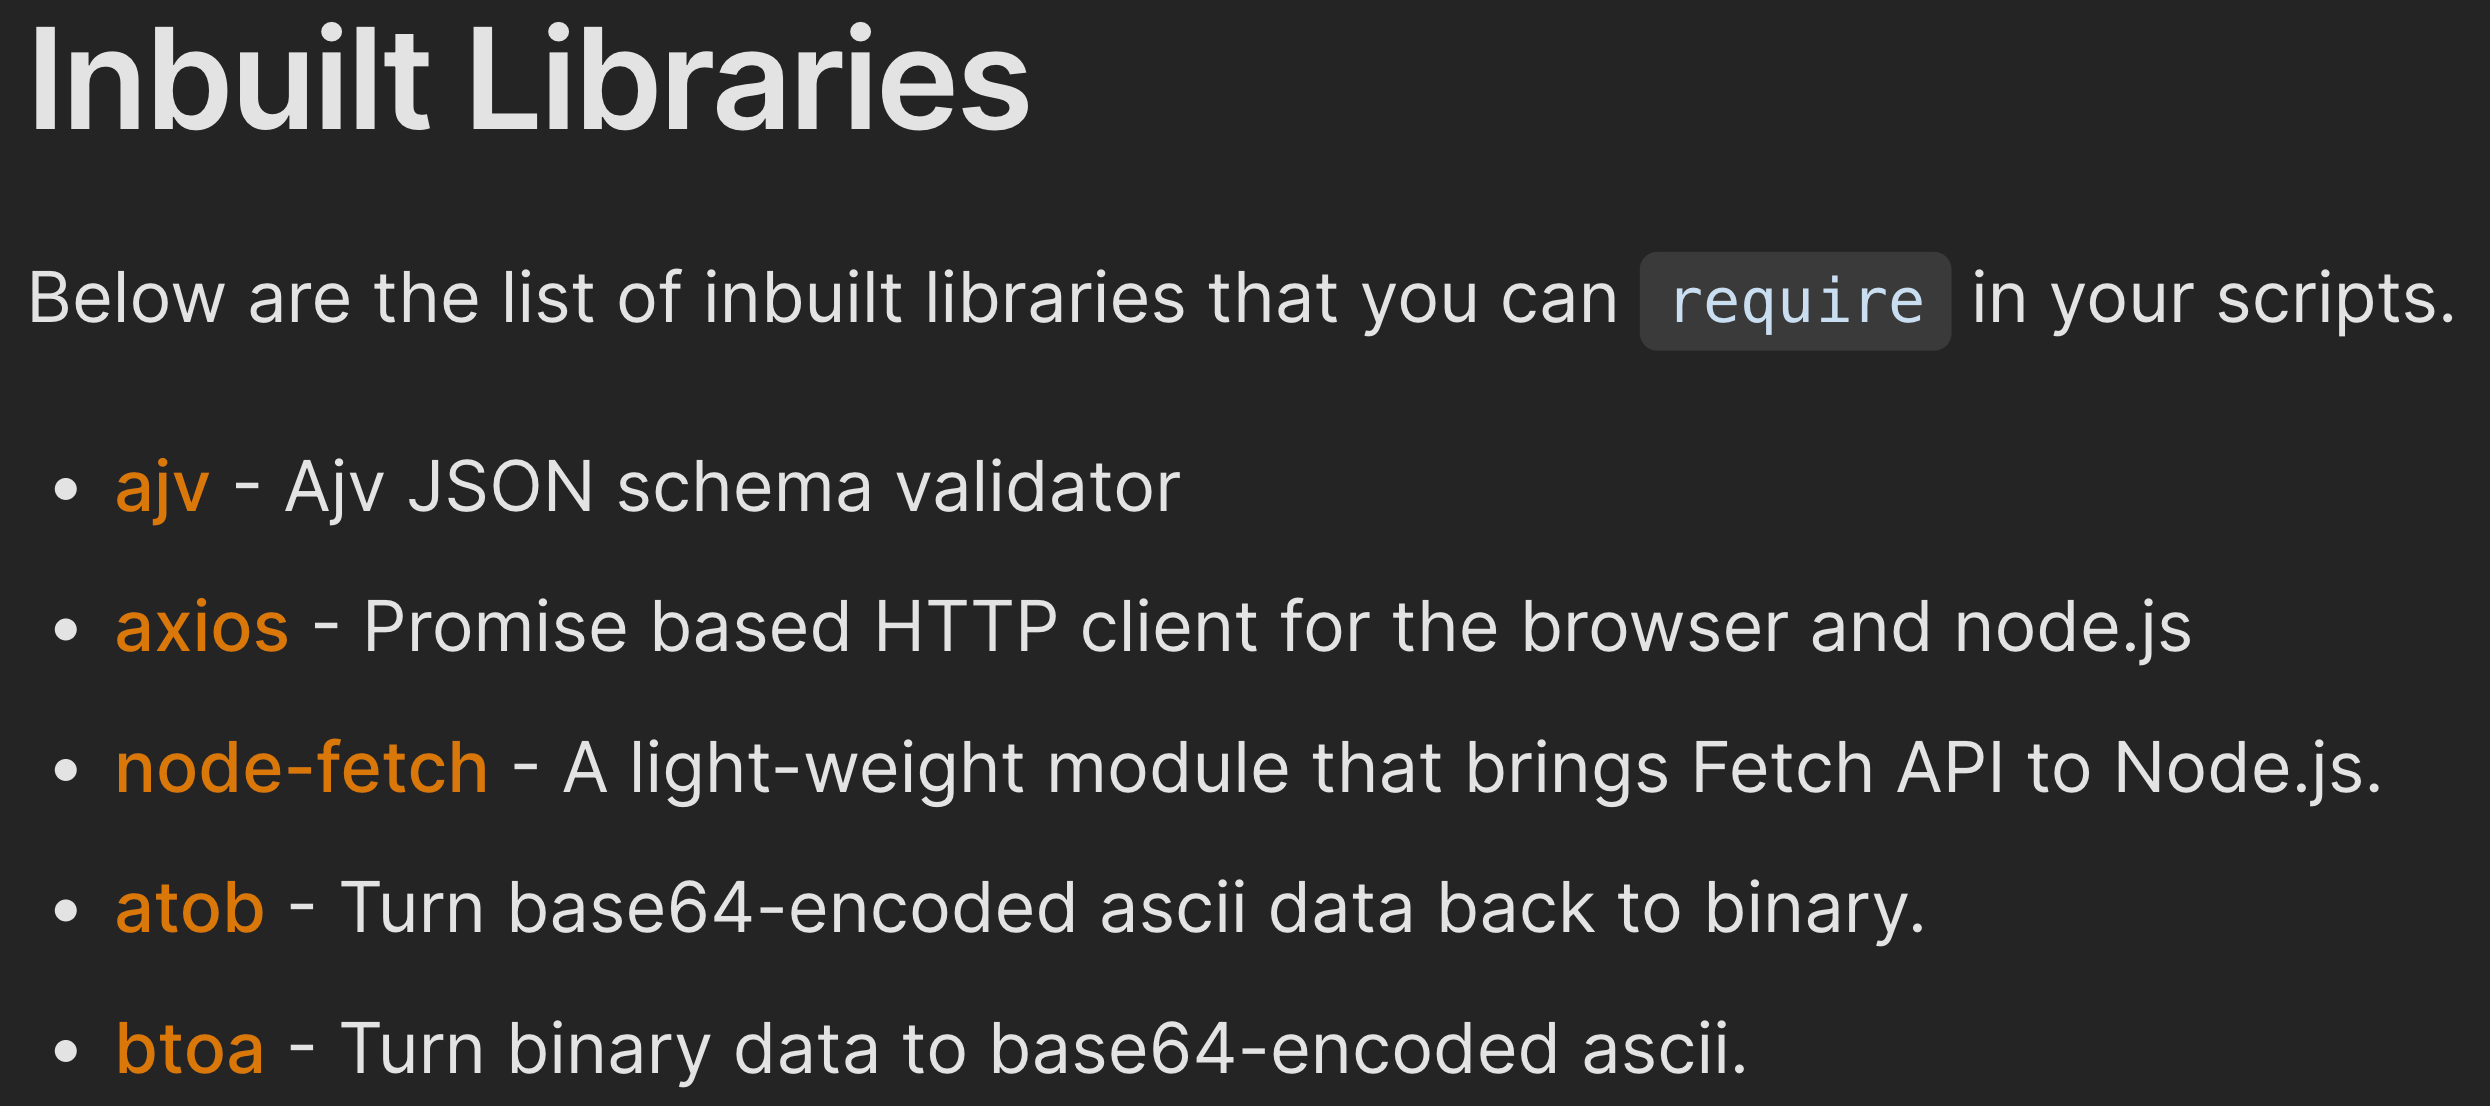 atob - Turn base64-encoded ascii data back to binary. btoa - Turn binary data to base64-encoded ascii.